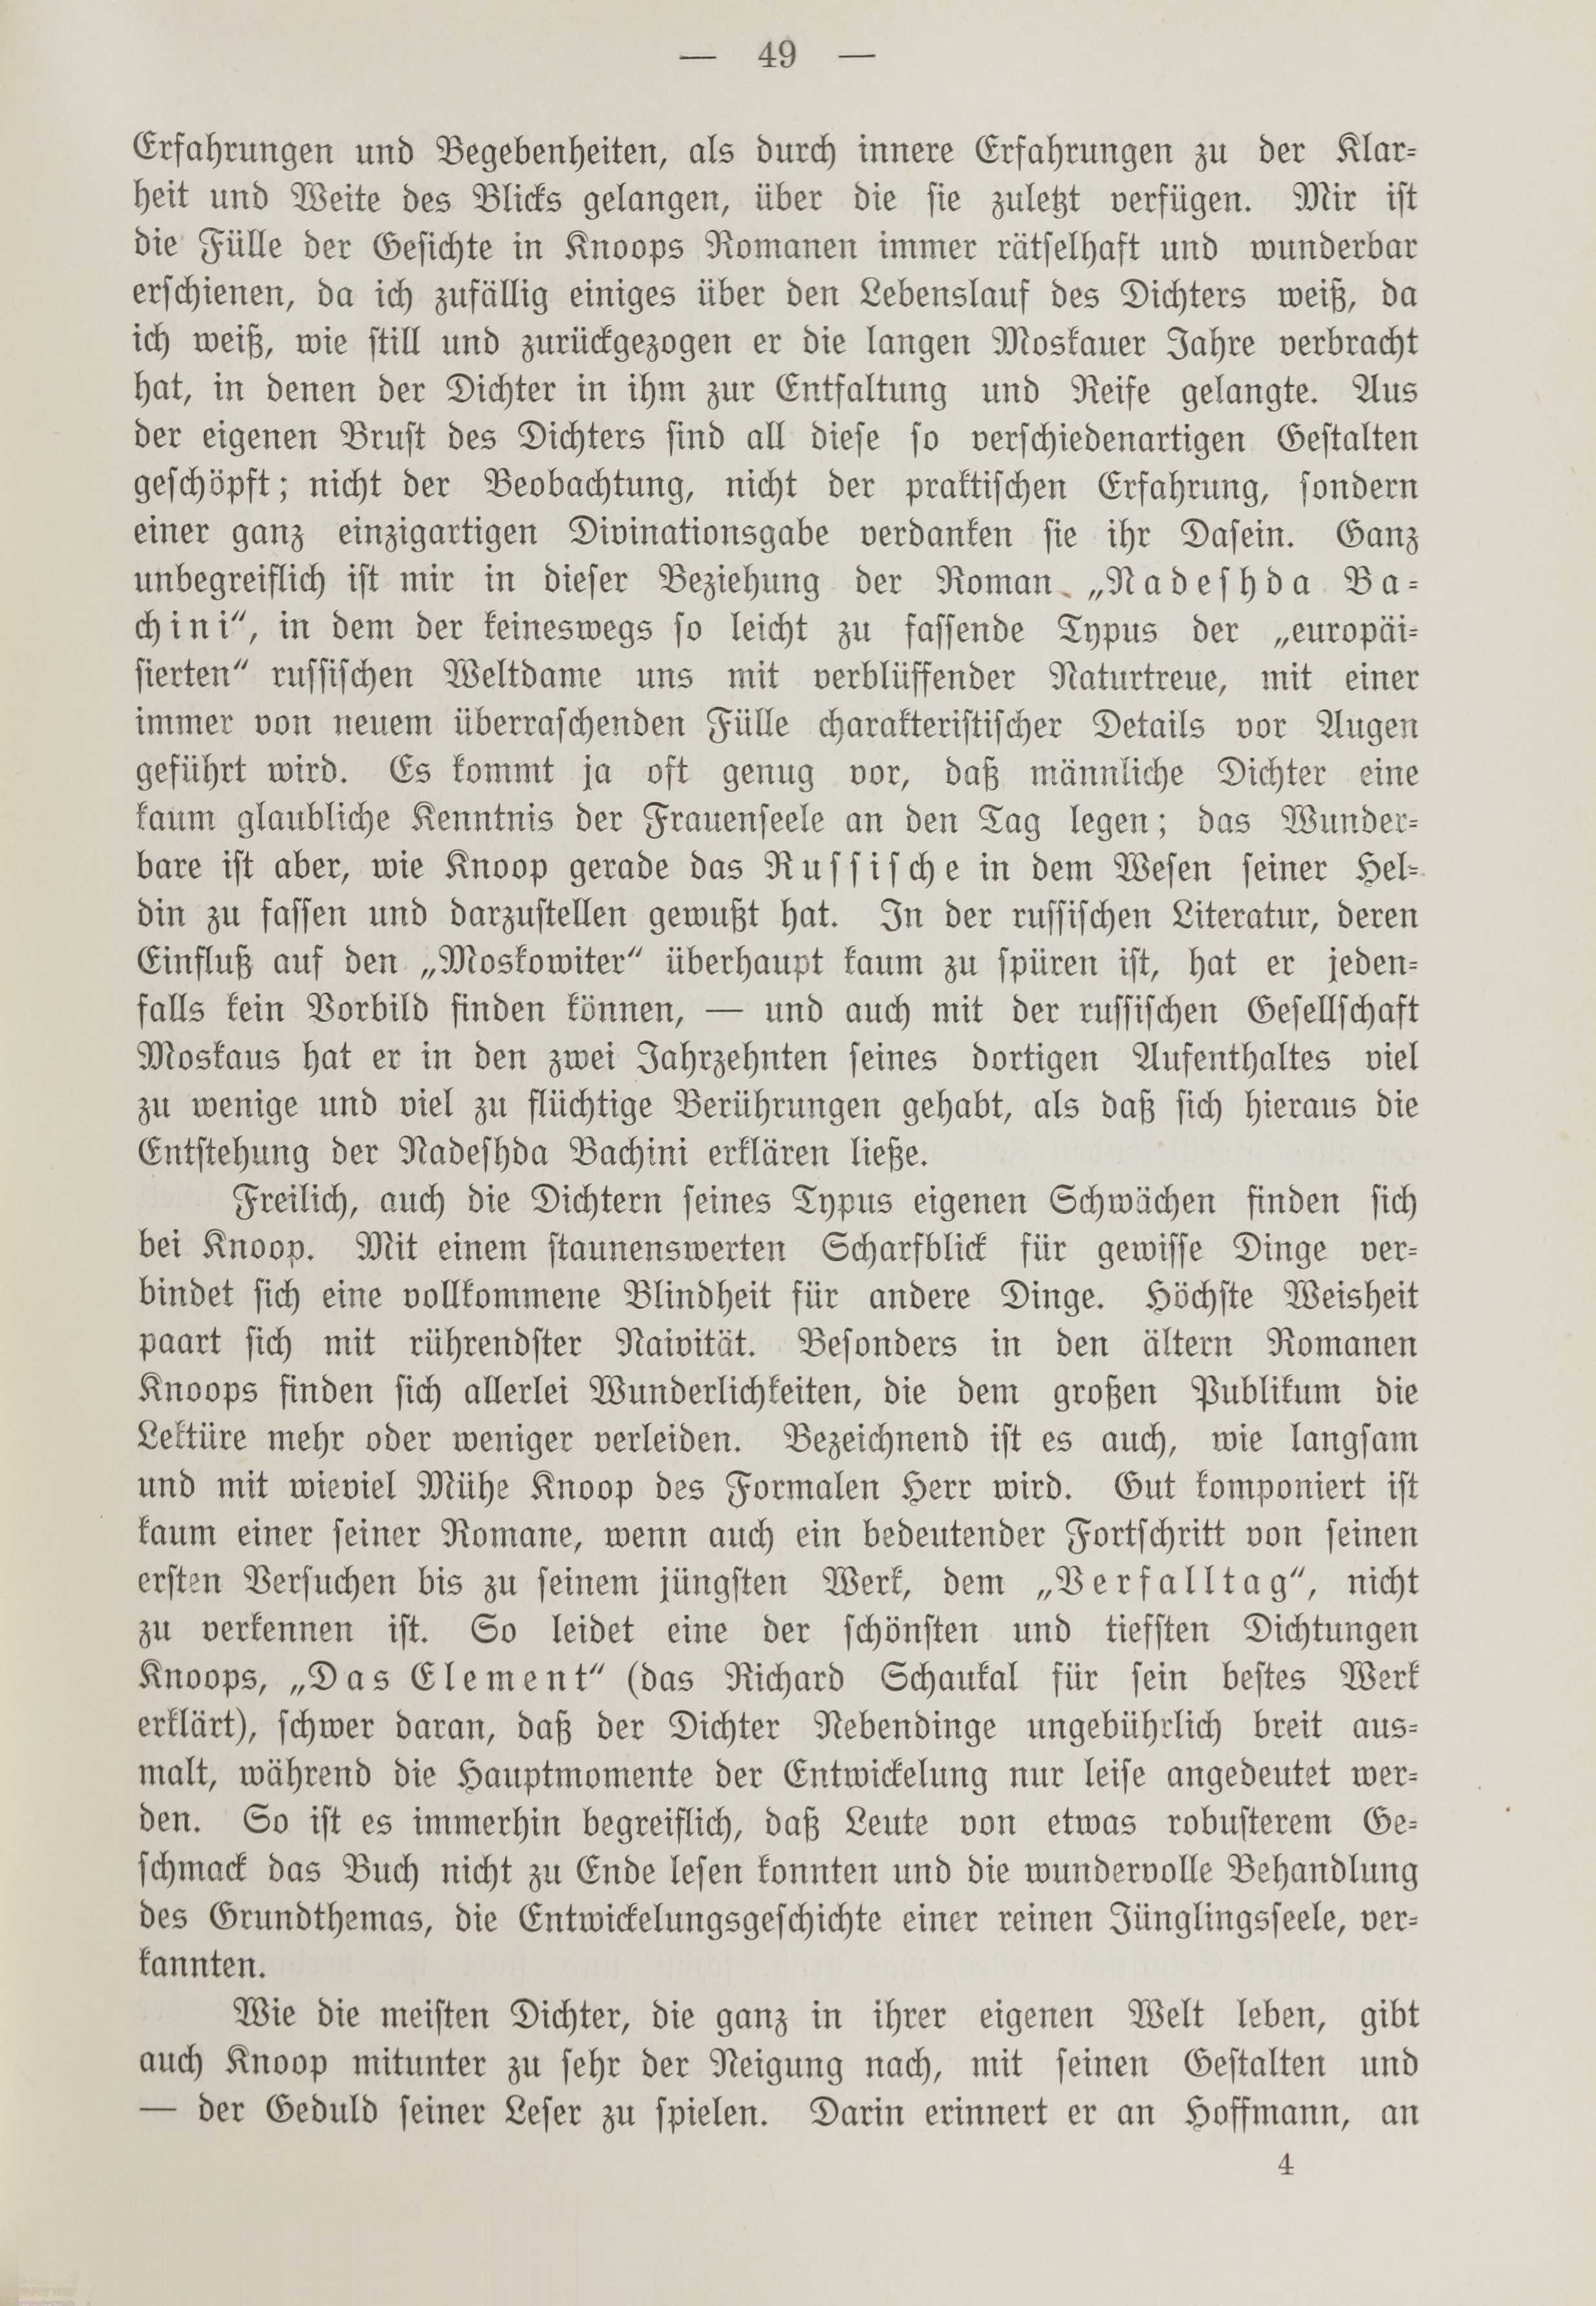 Deutsche Monatsschrift für Russland [1] (1912) | 56. (49) Haupttext